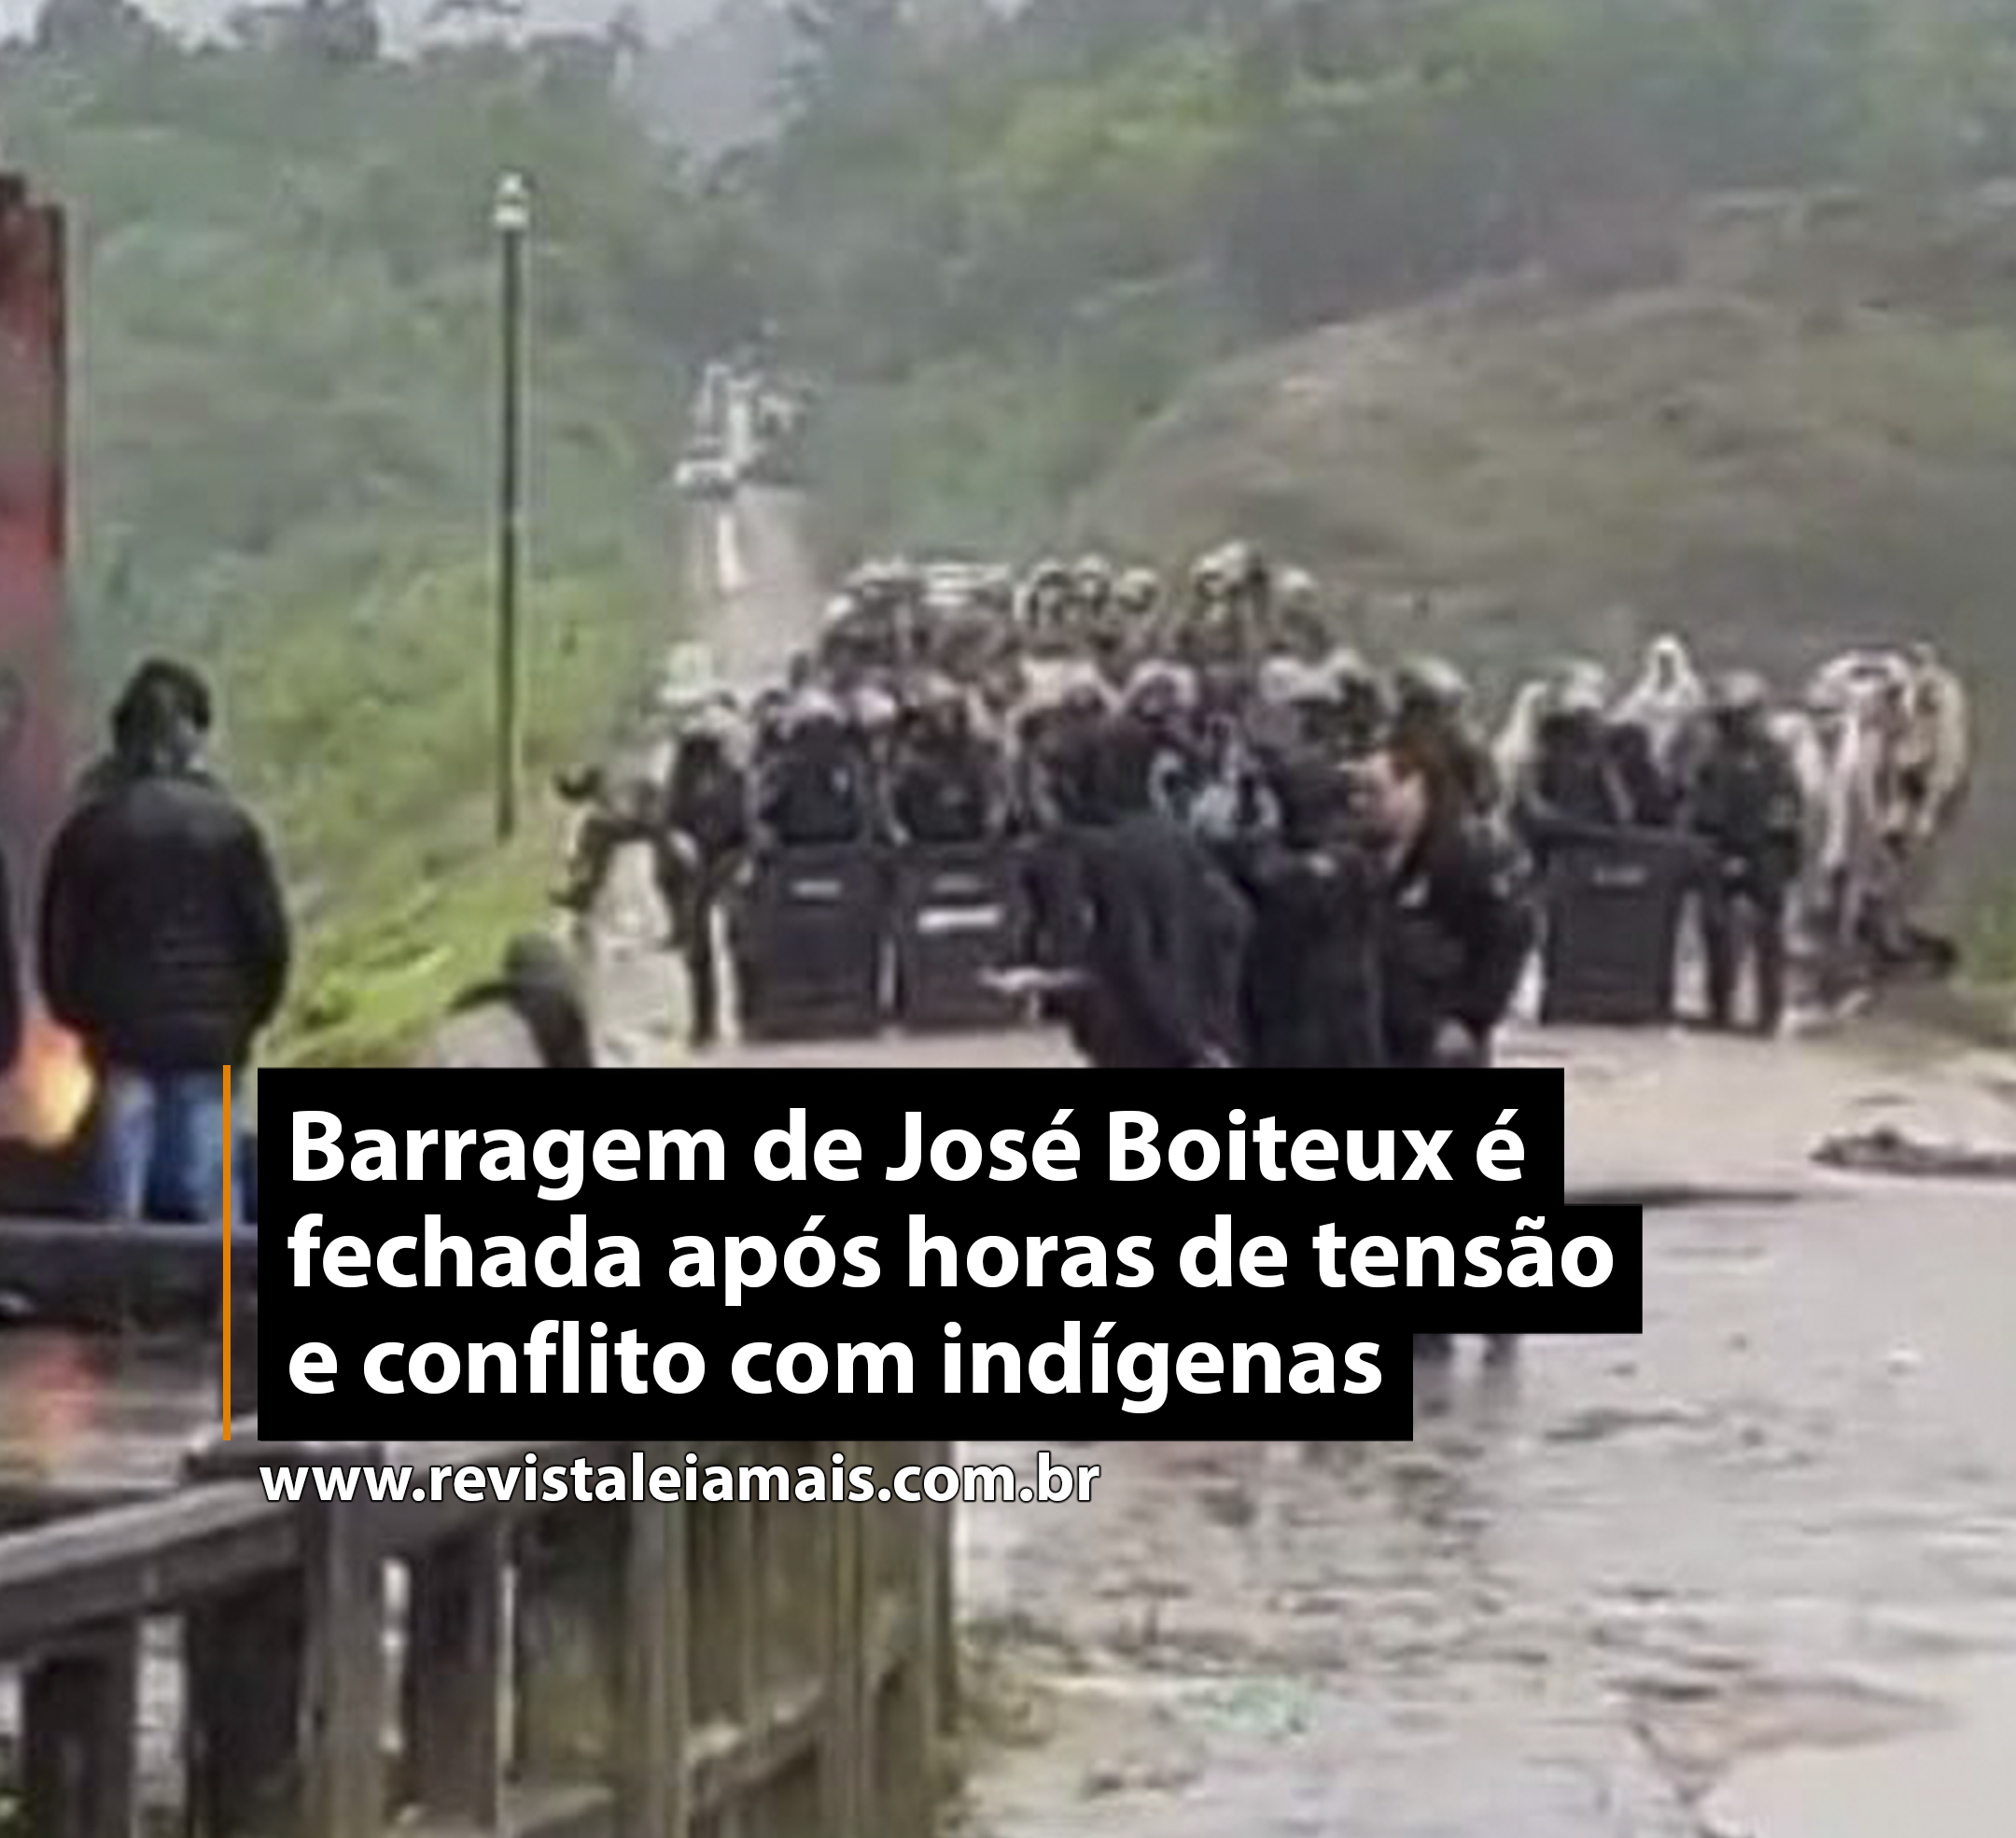 Barragem de José Boiteux é fechada após horas de tensão e conflito com indígenas